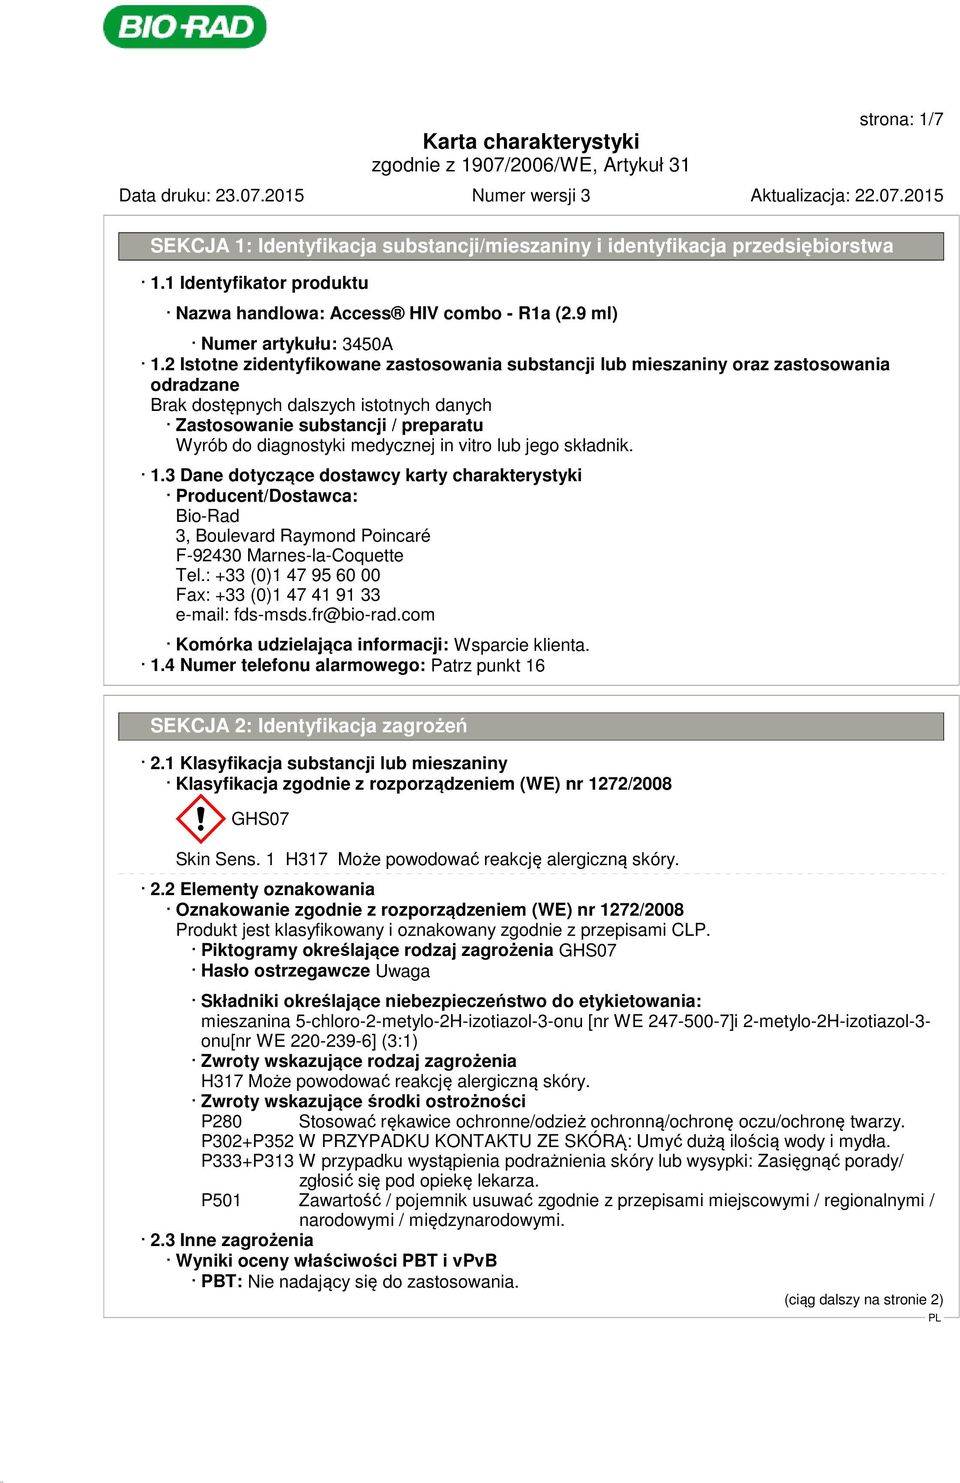 3 Dane dotyczące dostawcy karty charakterystyki Producent/Dostawca: Bio-Rad 3, Boulevard Raymond Poincaré F-92430 Marnes-la-Coquette Tel.